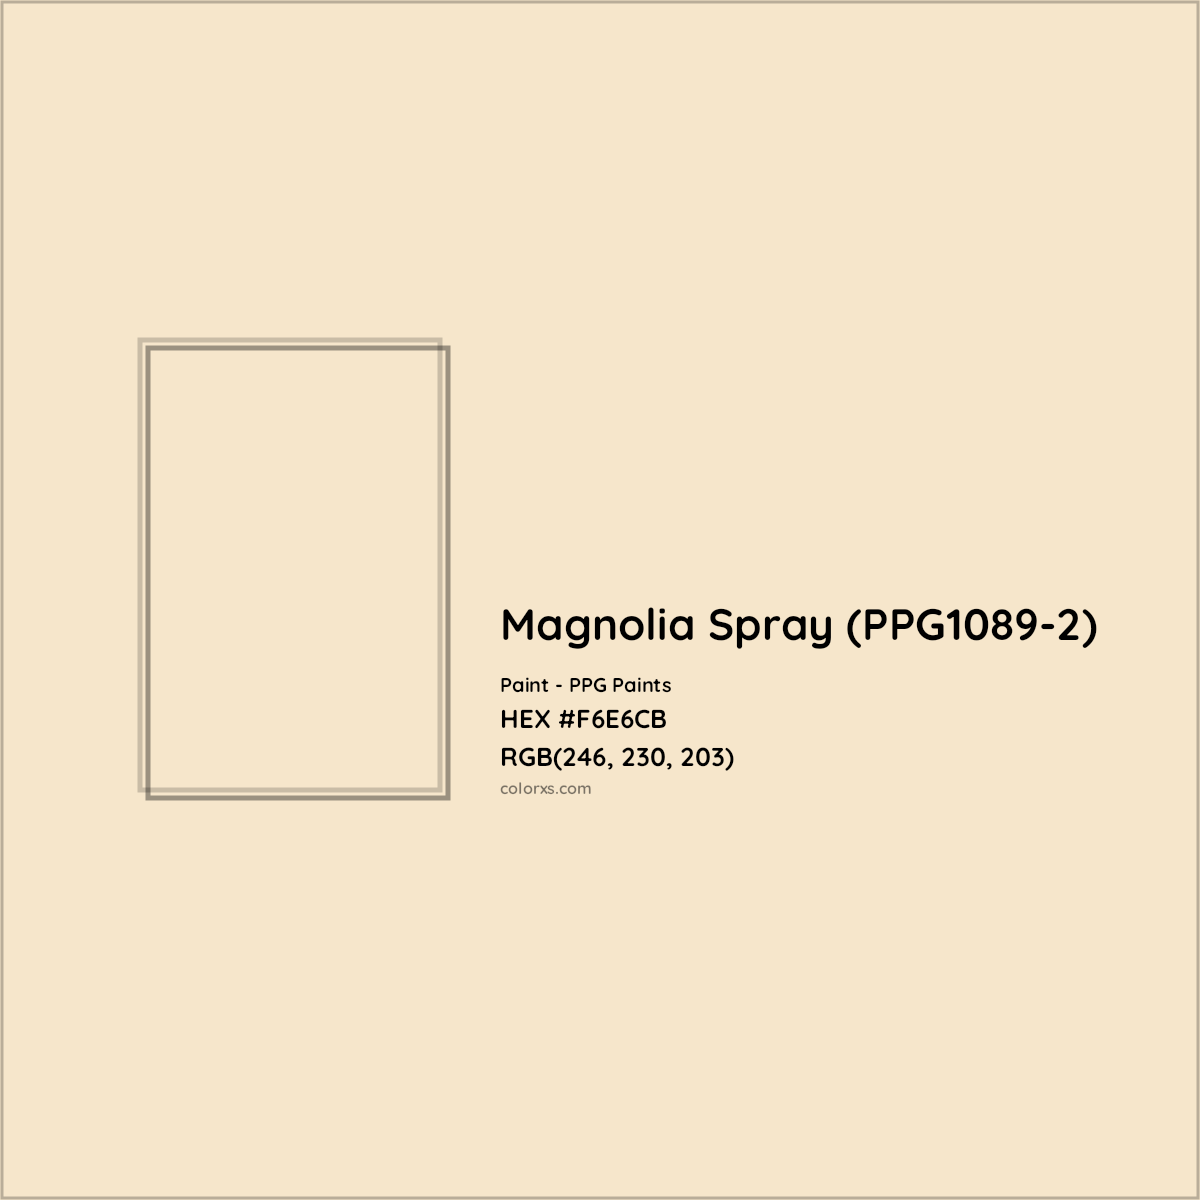 HEX #F6E6CB Magnolia Spray (PPG1089-2) Paint PPG Paints - Color Code